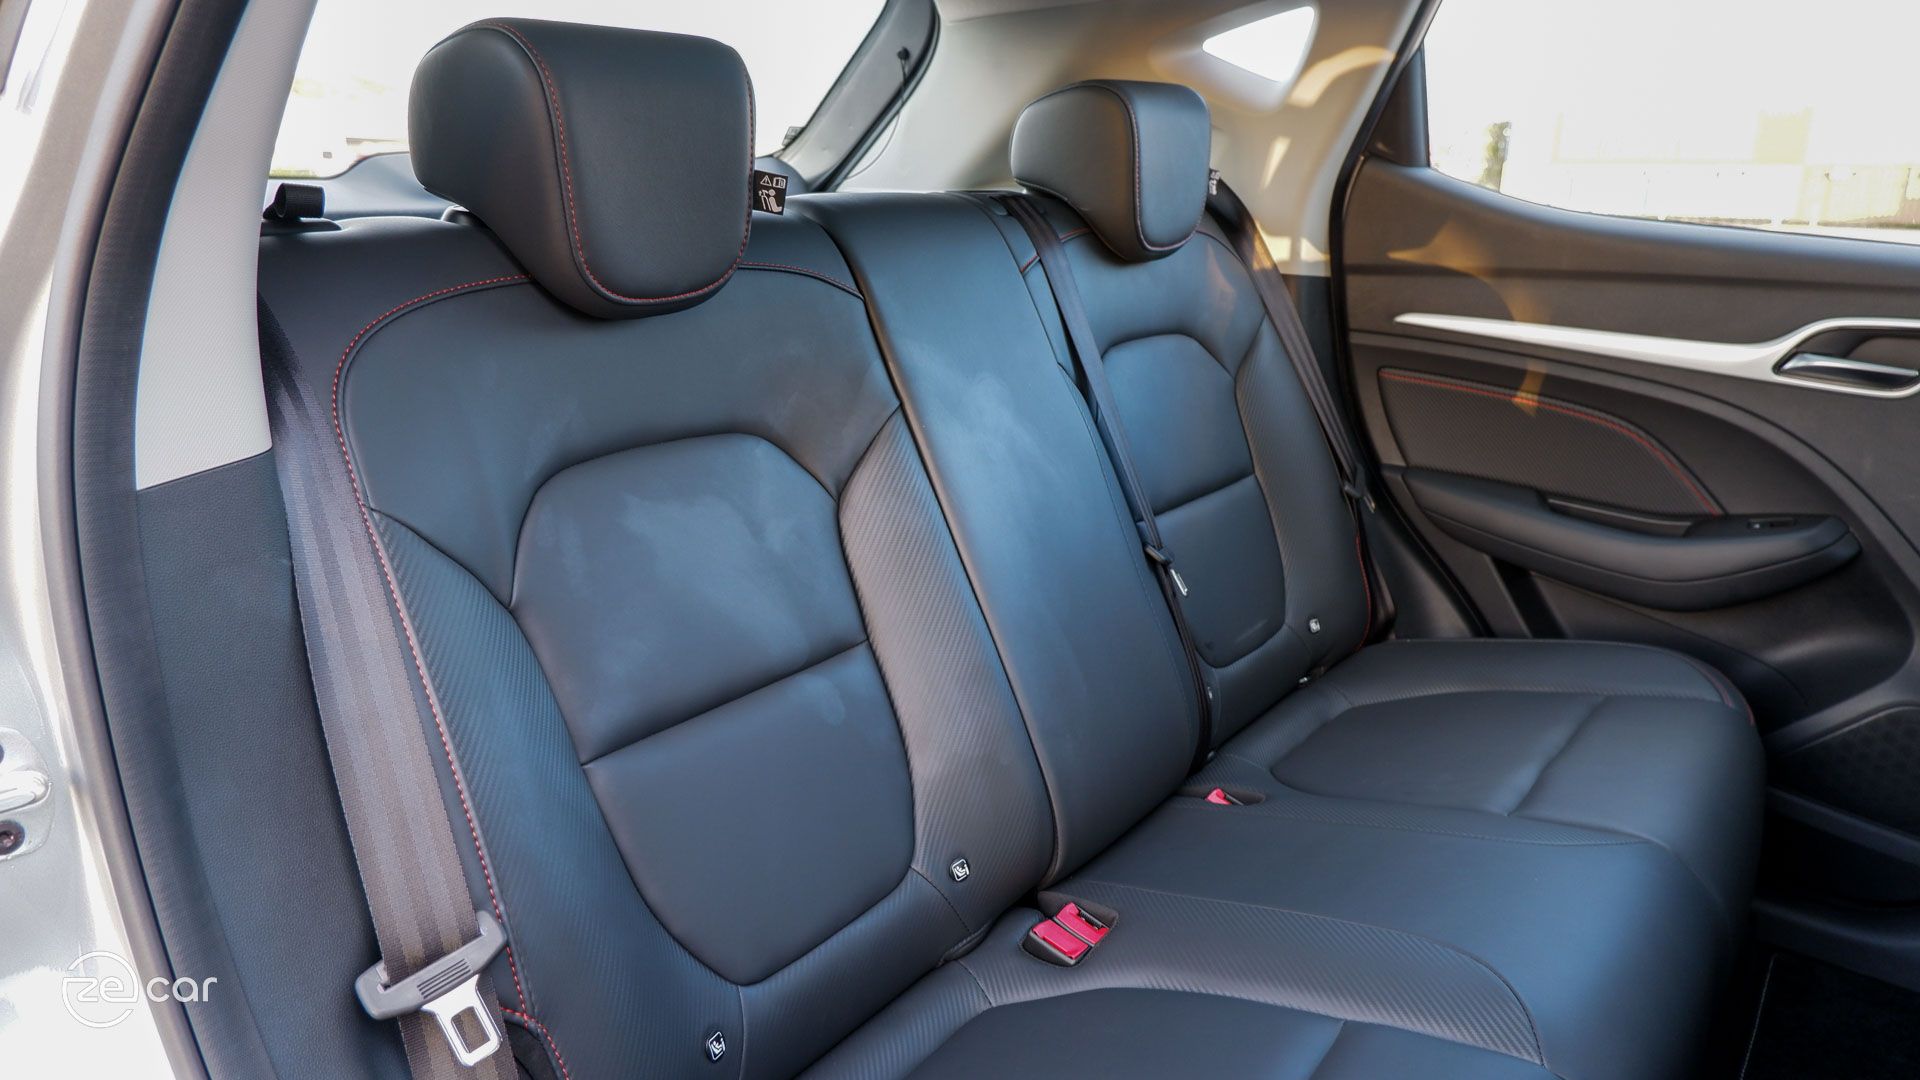 MG ZS EV interior and rear seats